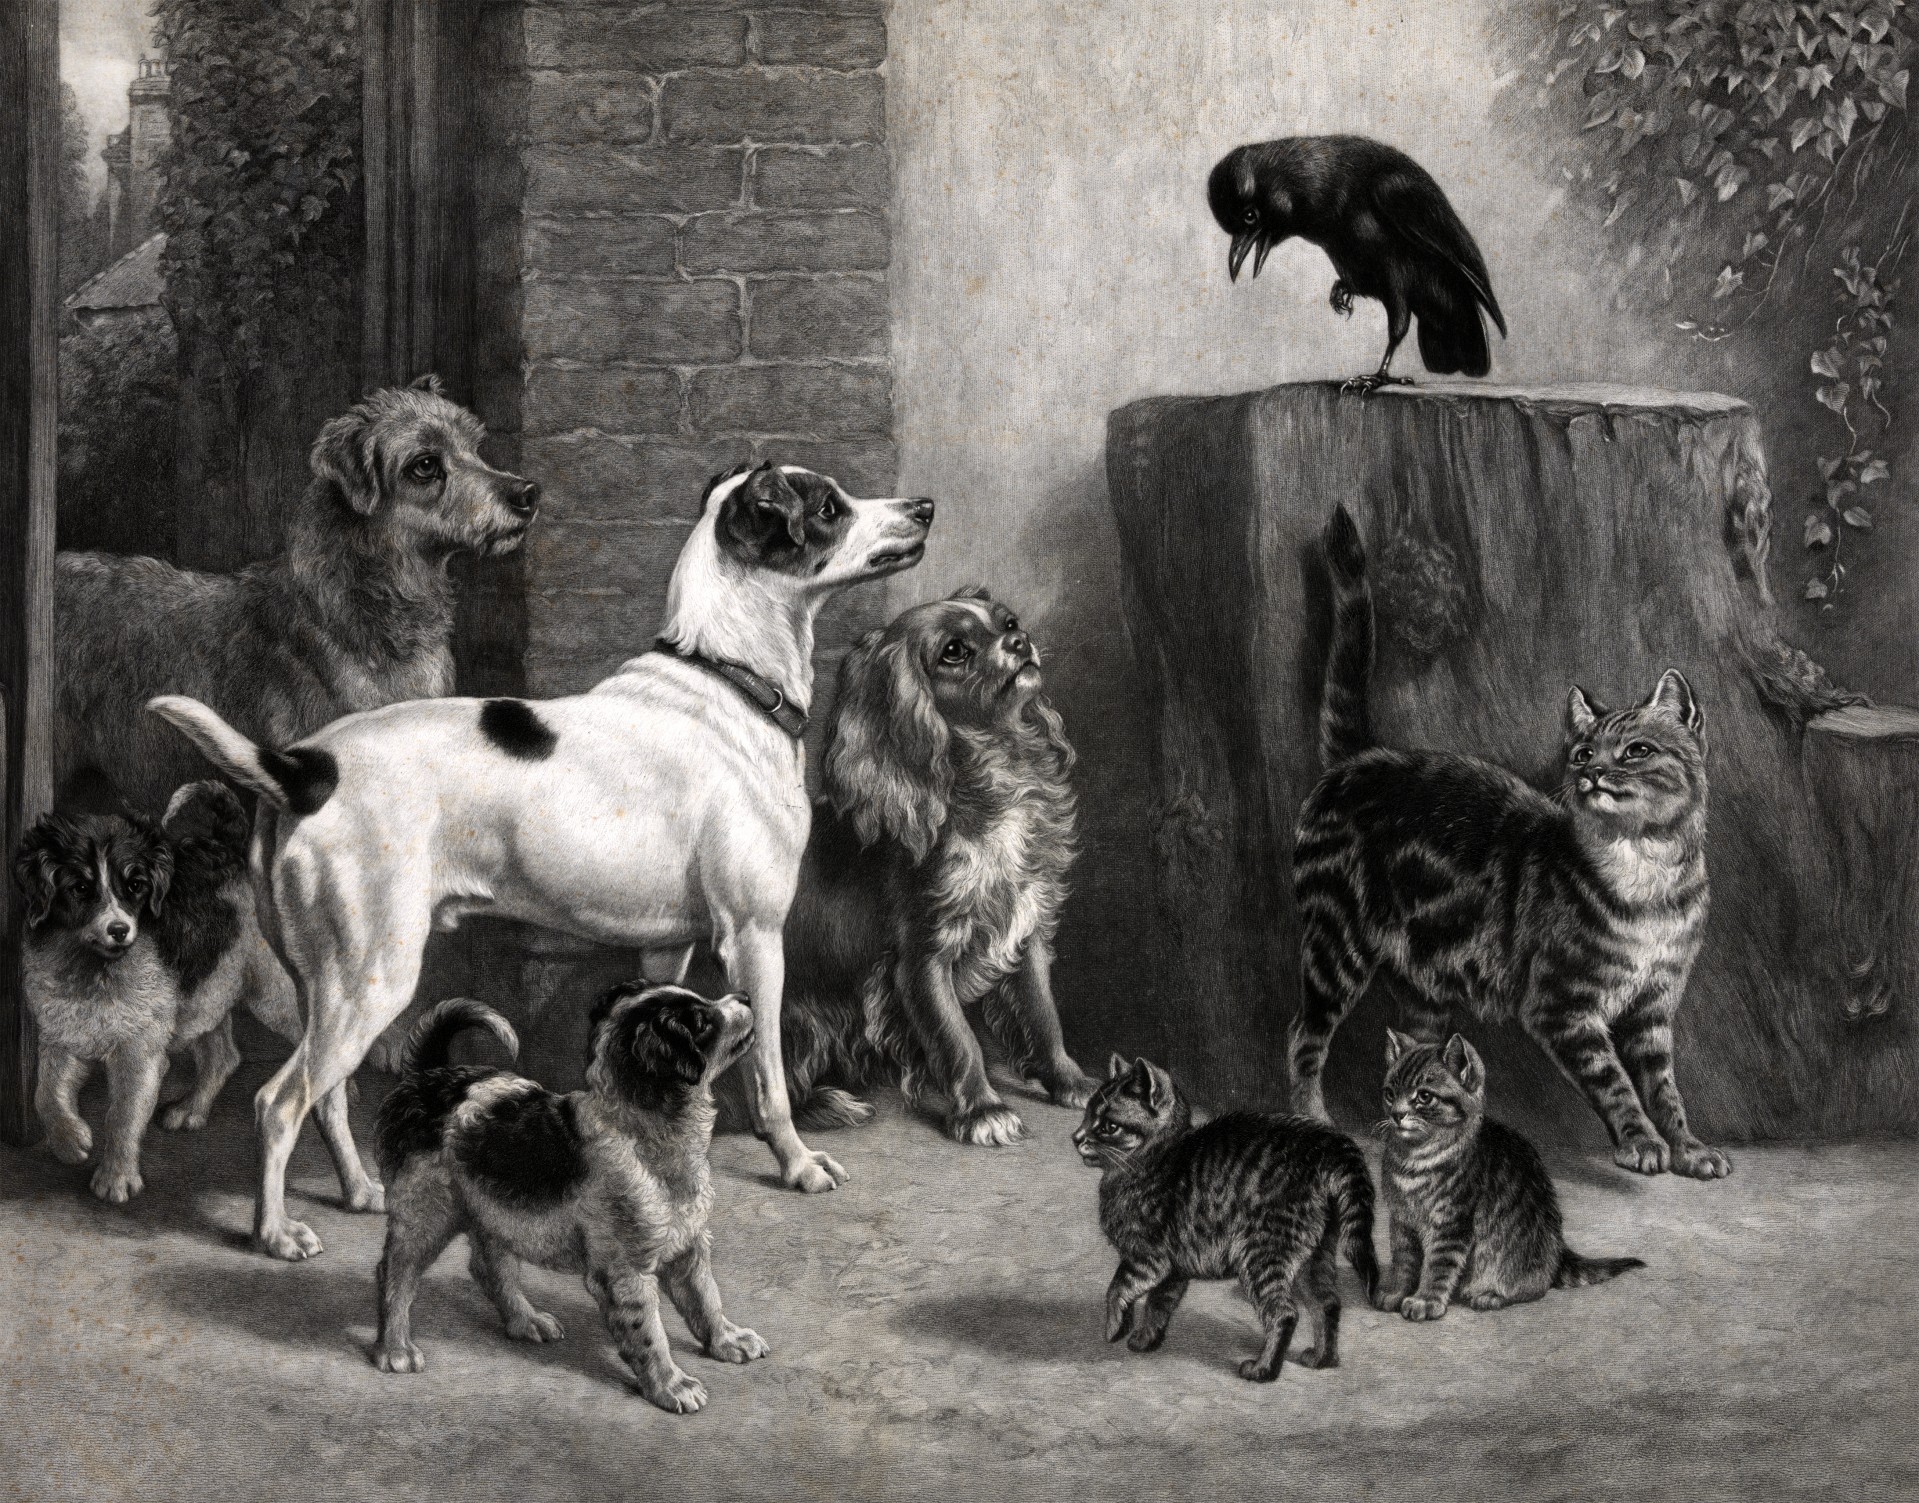 Quelle: https://www.publicdomainpictures.net/en/view-image.php?image=77019&picture=dogs-amp-cats